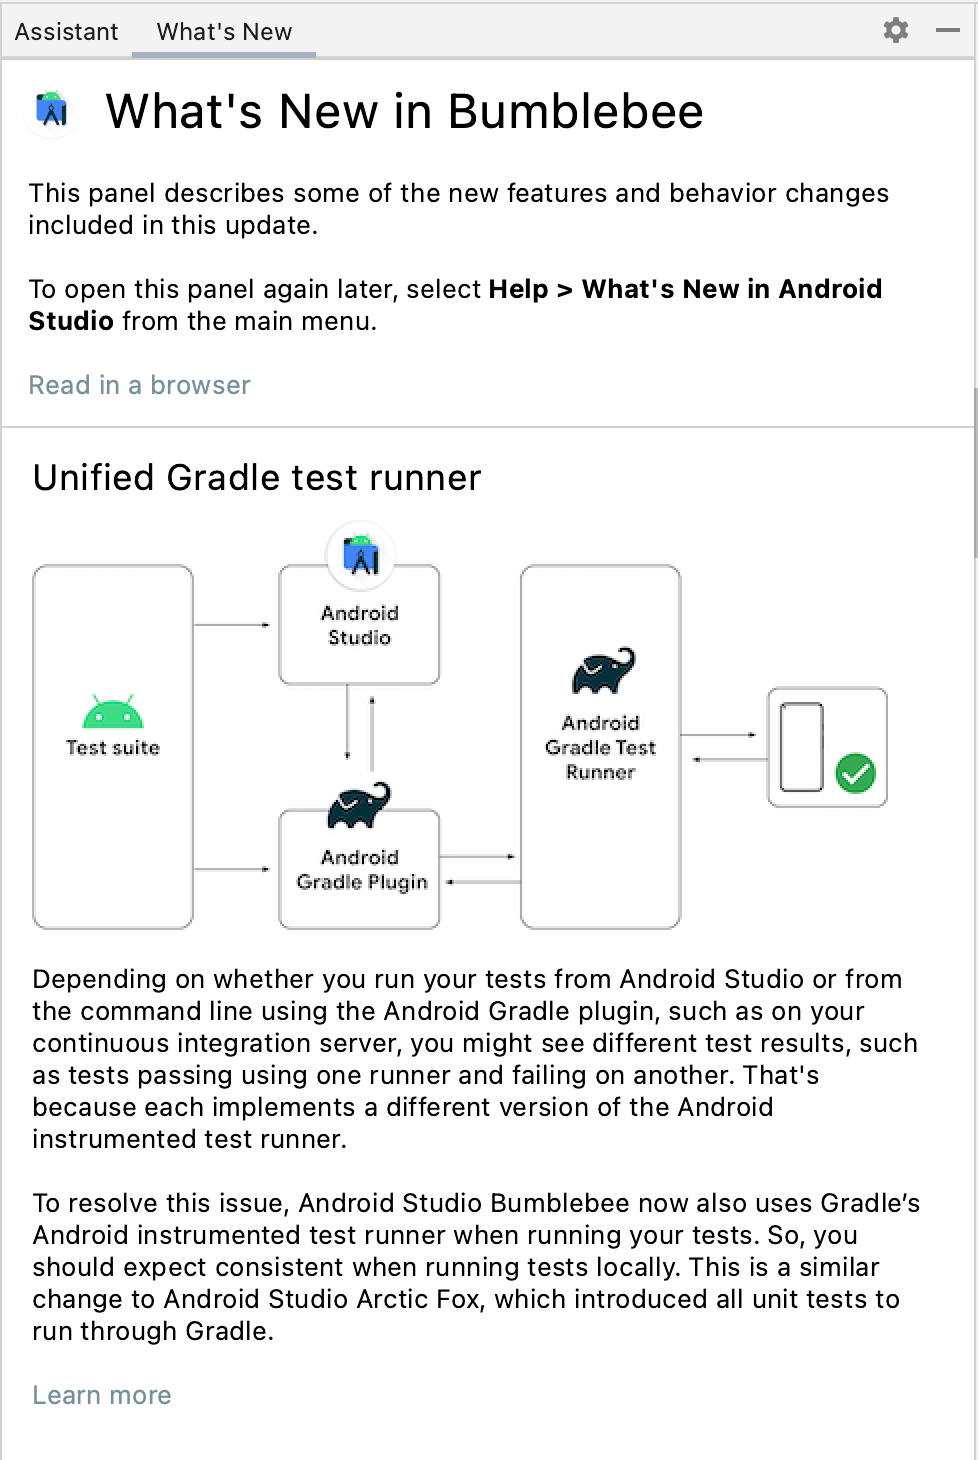 この画像は、Android Studio のアップデートに関する情報を提供する [What&#39;s New] ペインの画像。